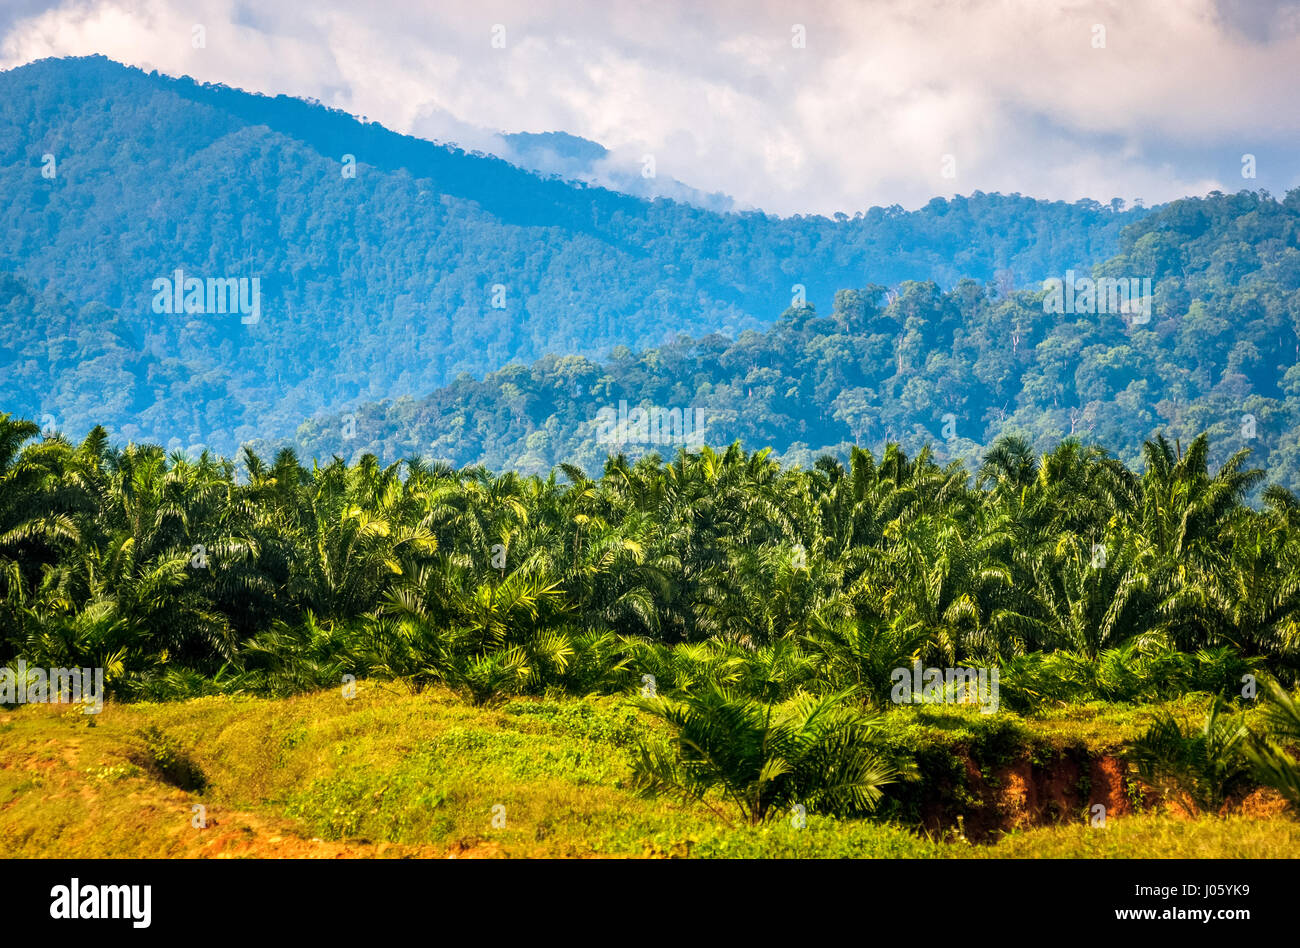 Palmiers à huile récemment plantés sur une zone de plantation, dans un fond de forêt vierge à Langkat, au nord de Sumatra, en Indonésie. Banque D'Images